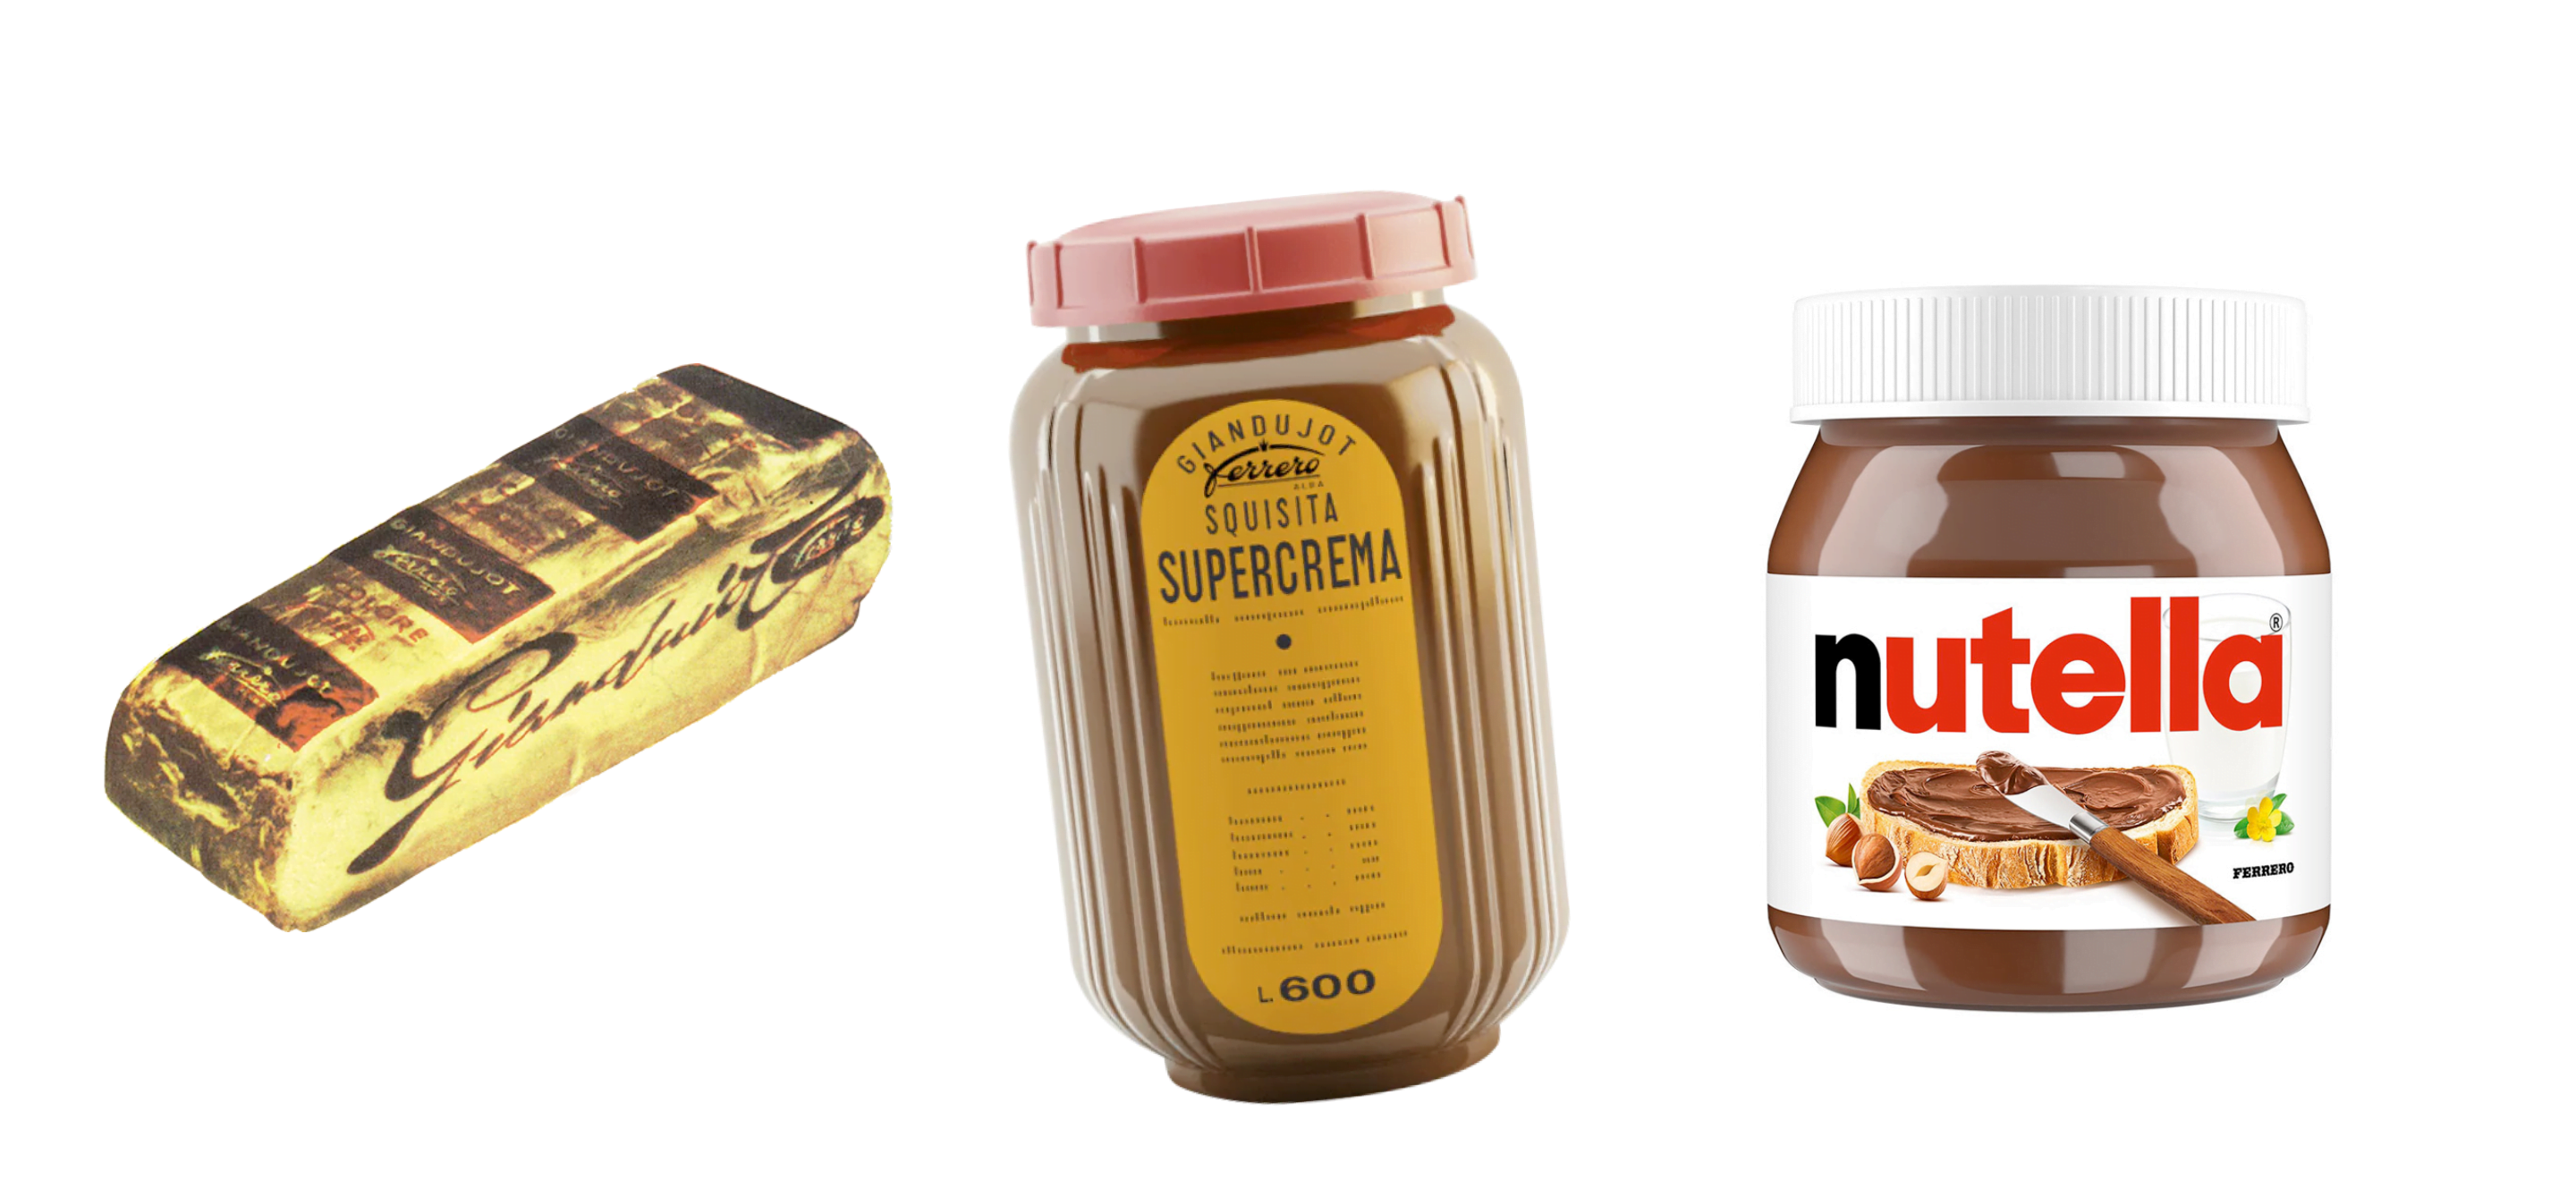 Evoluzione packaging Nutella